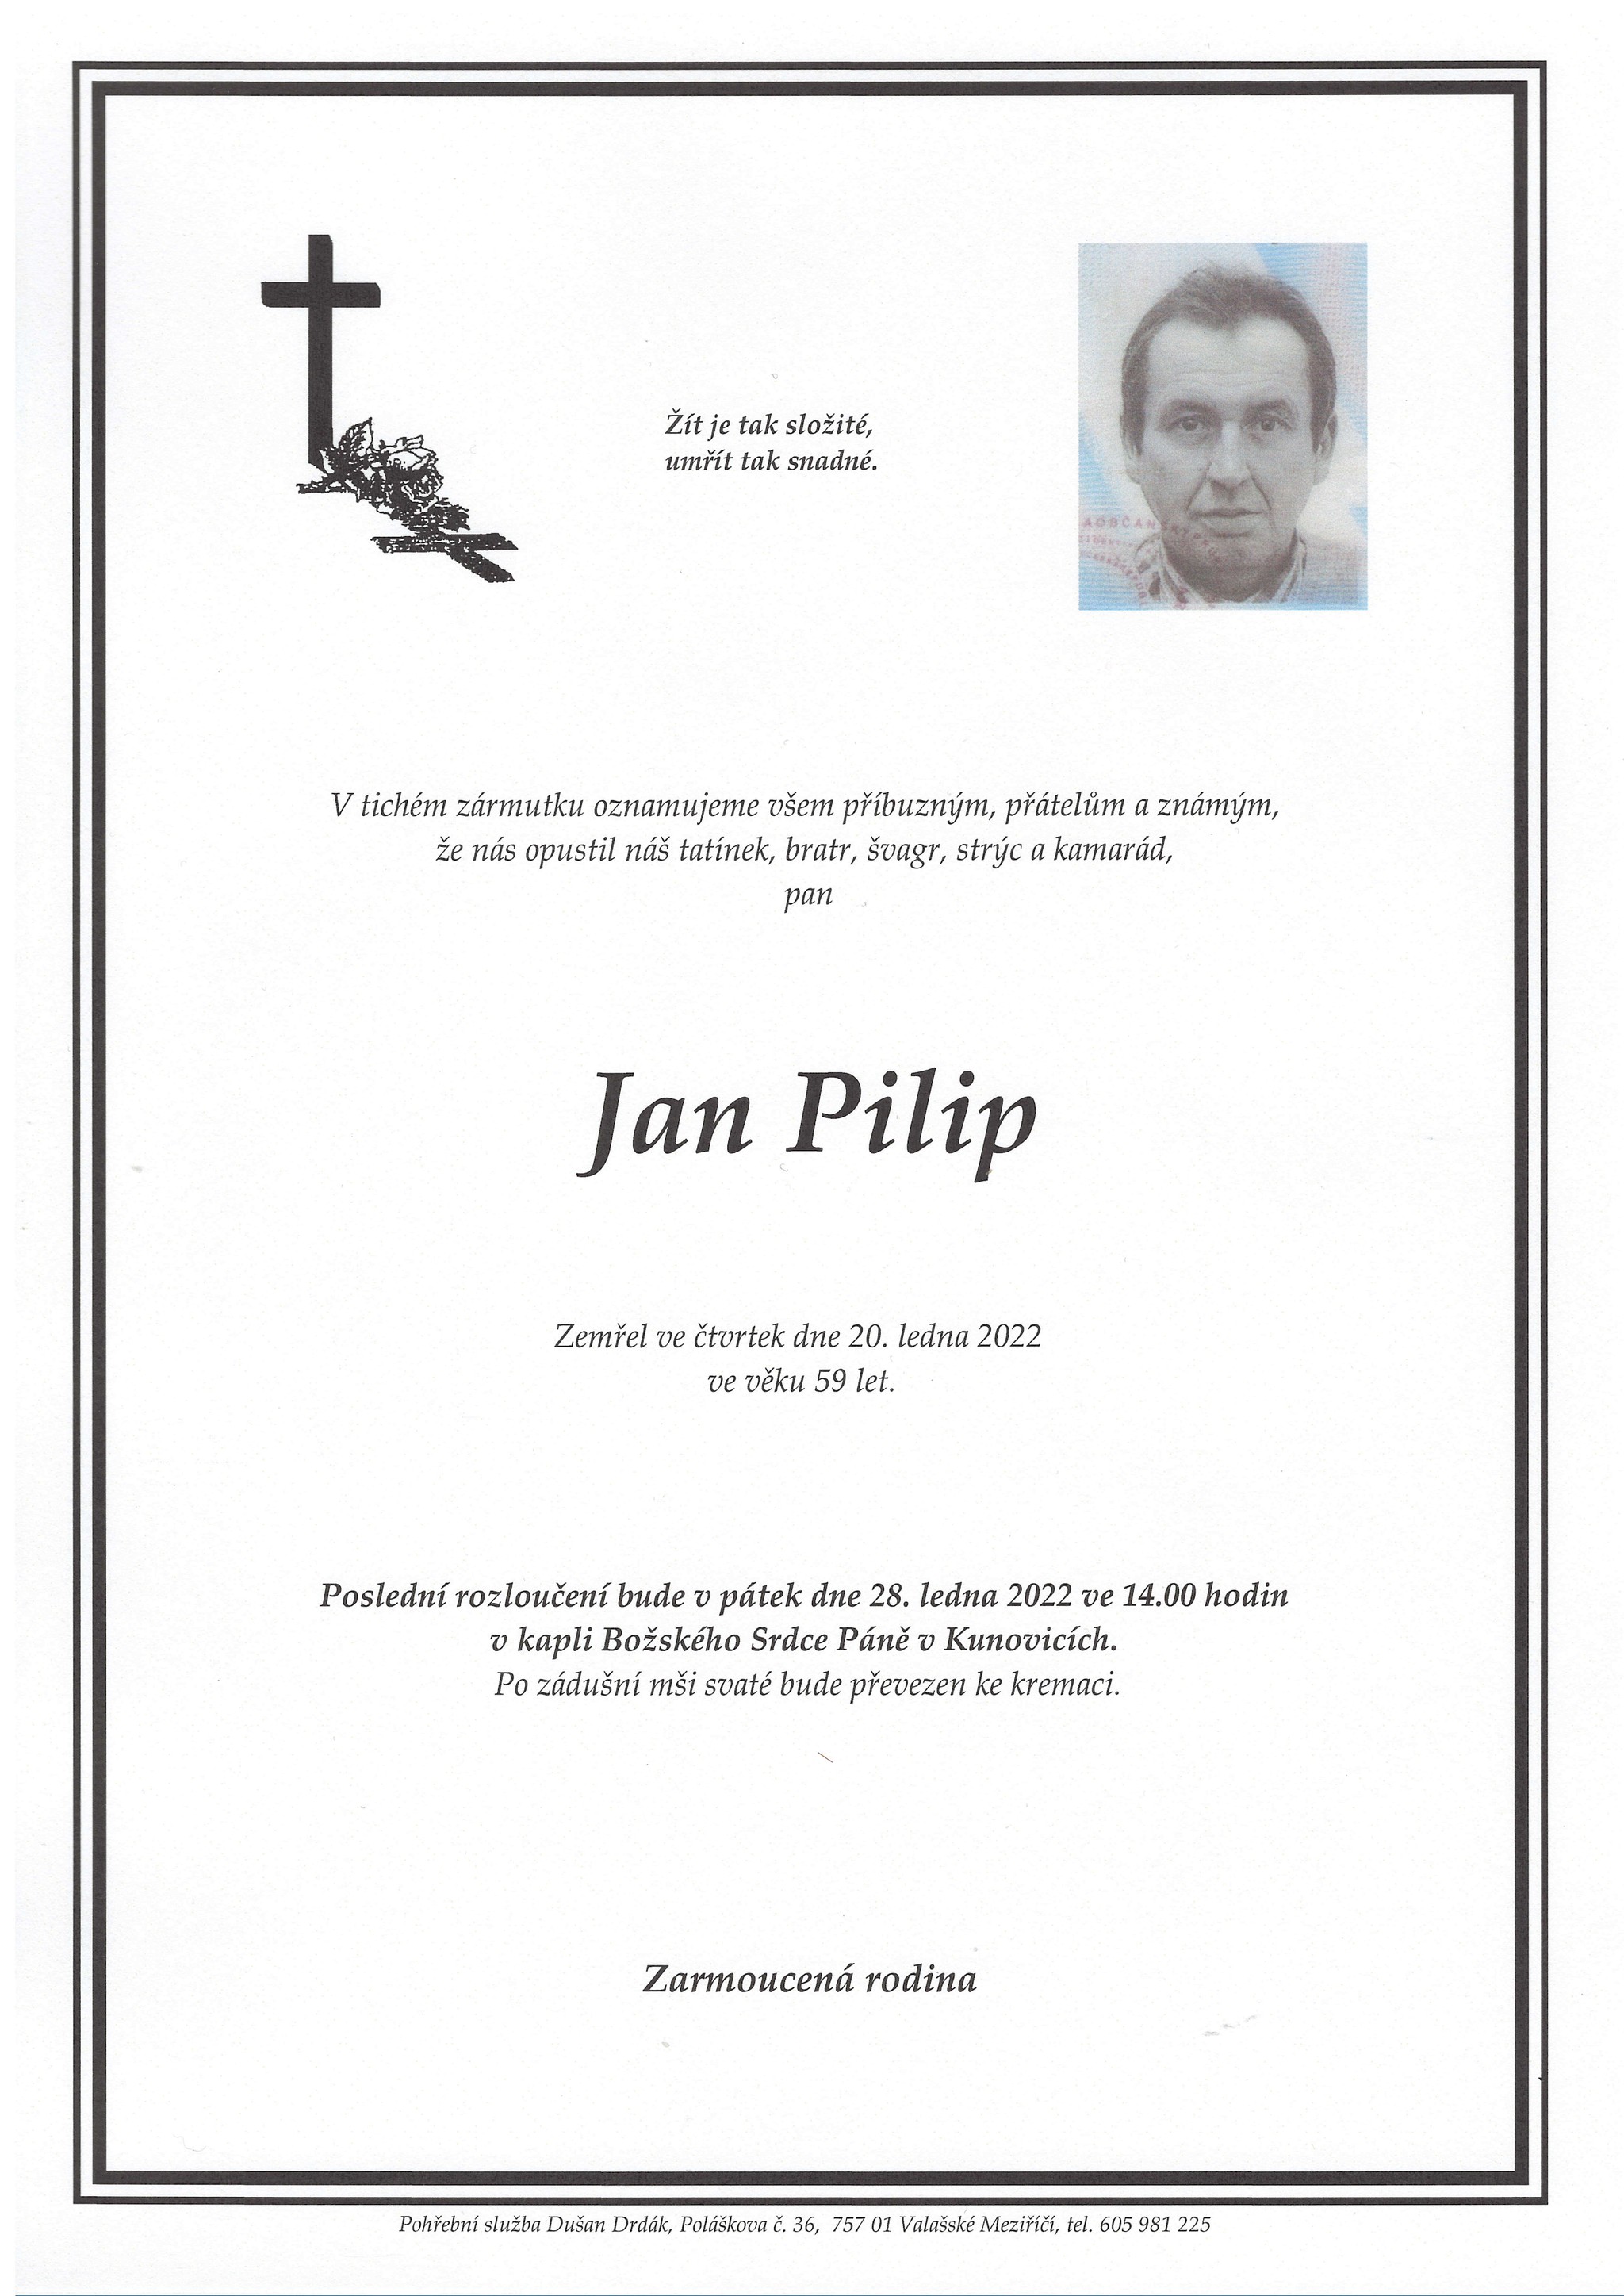 Jan Pilip